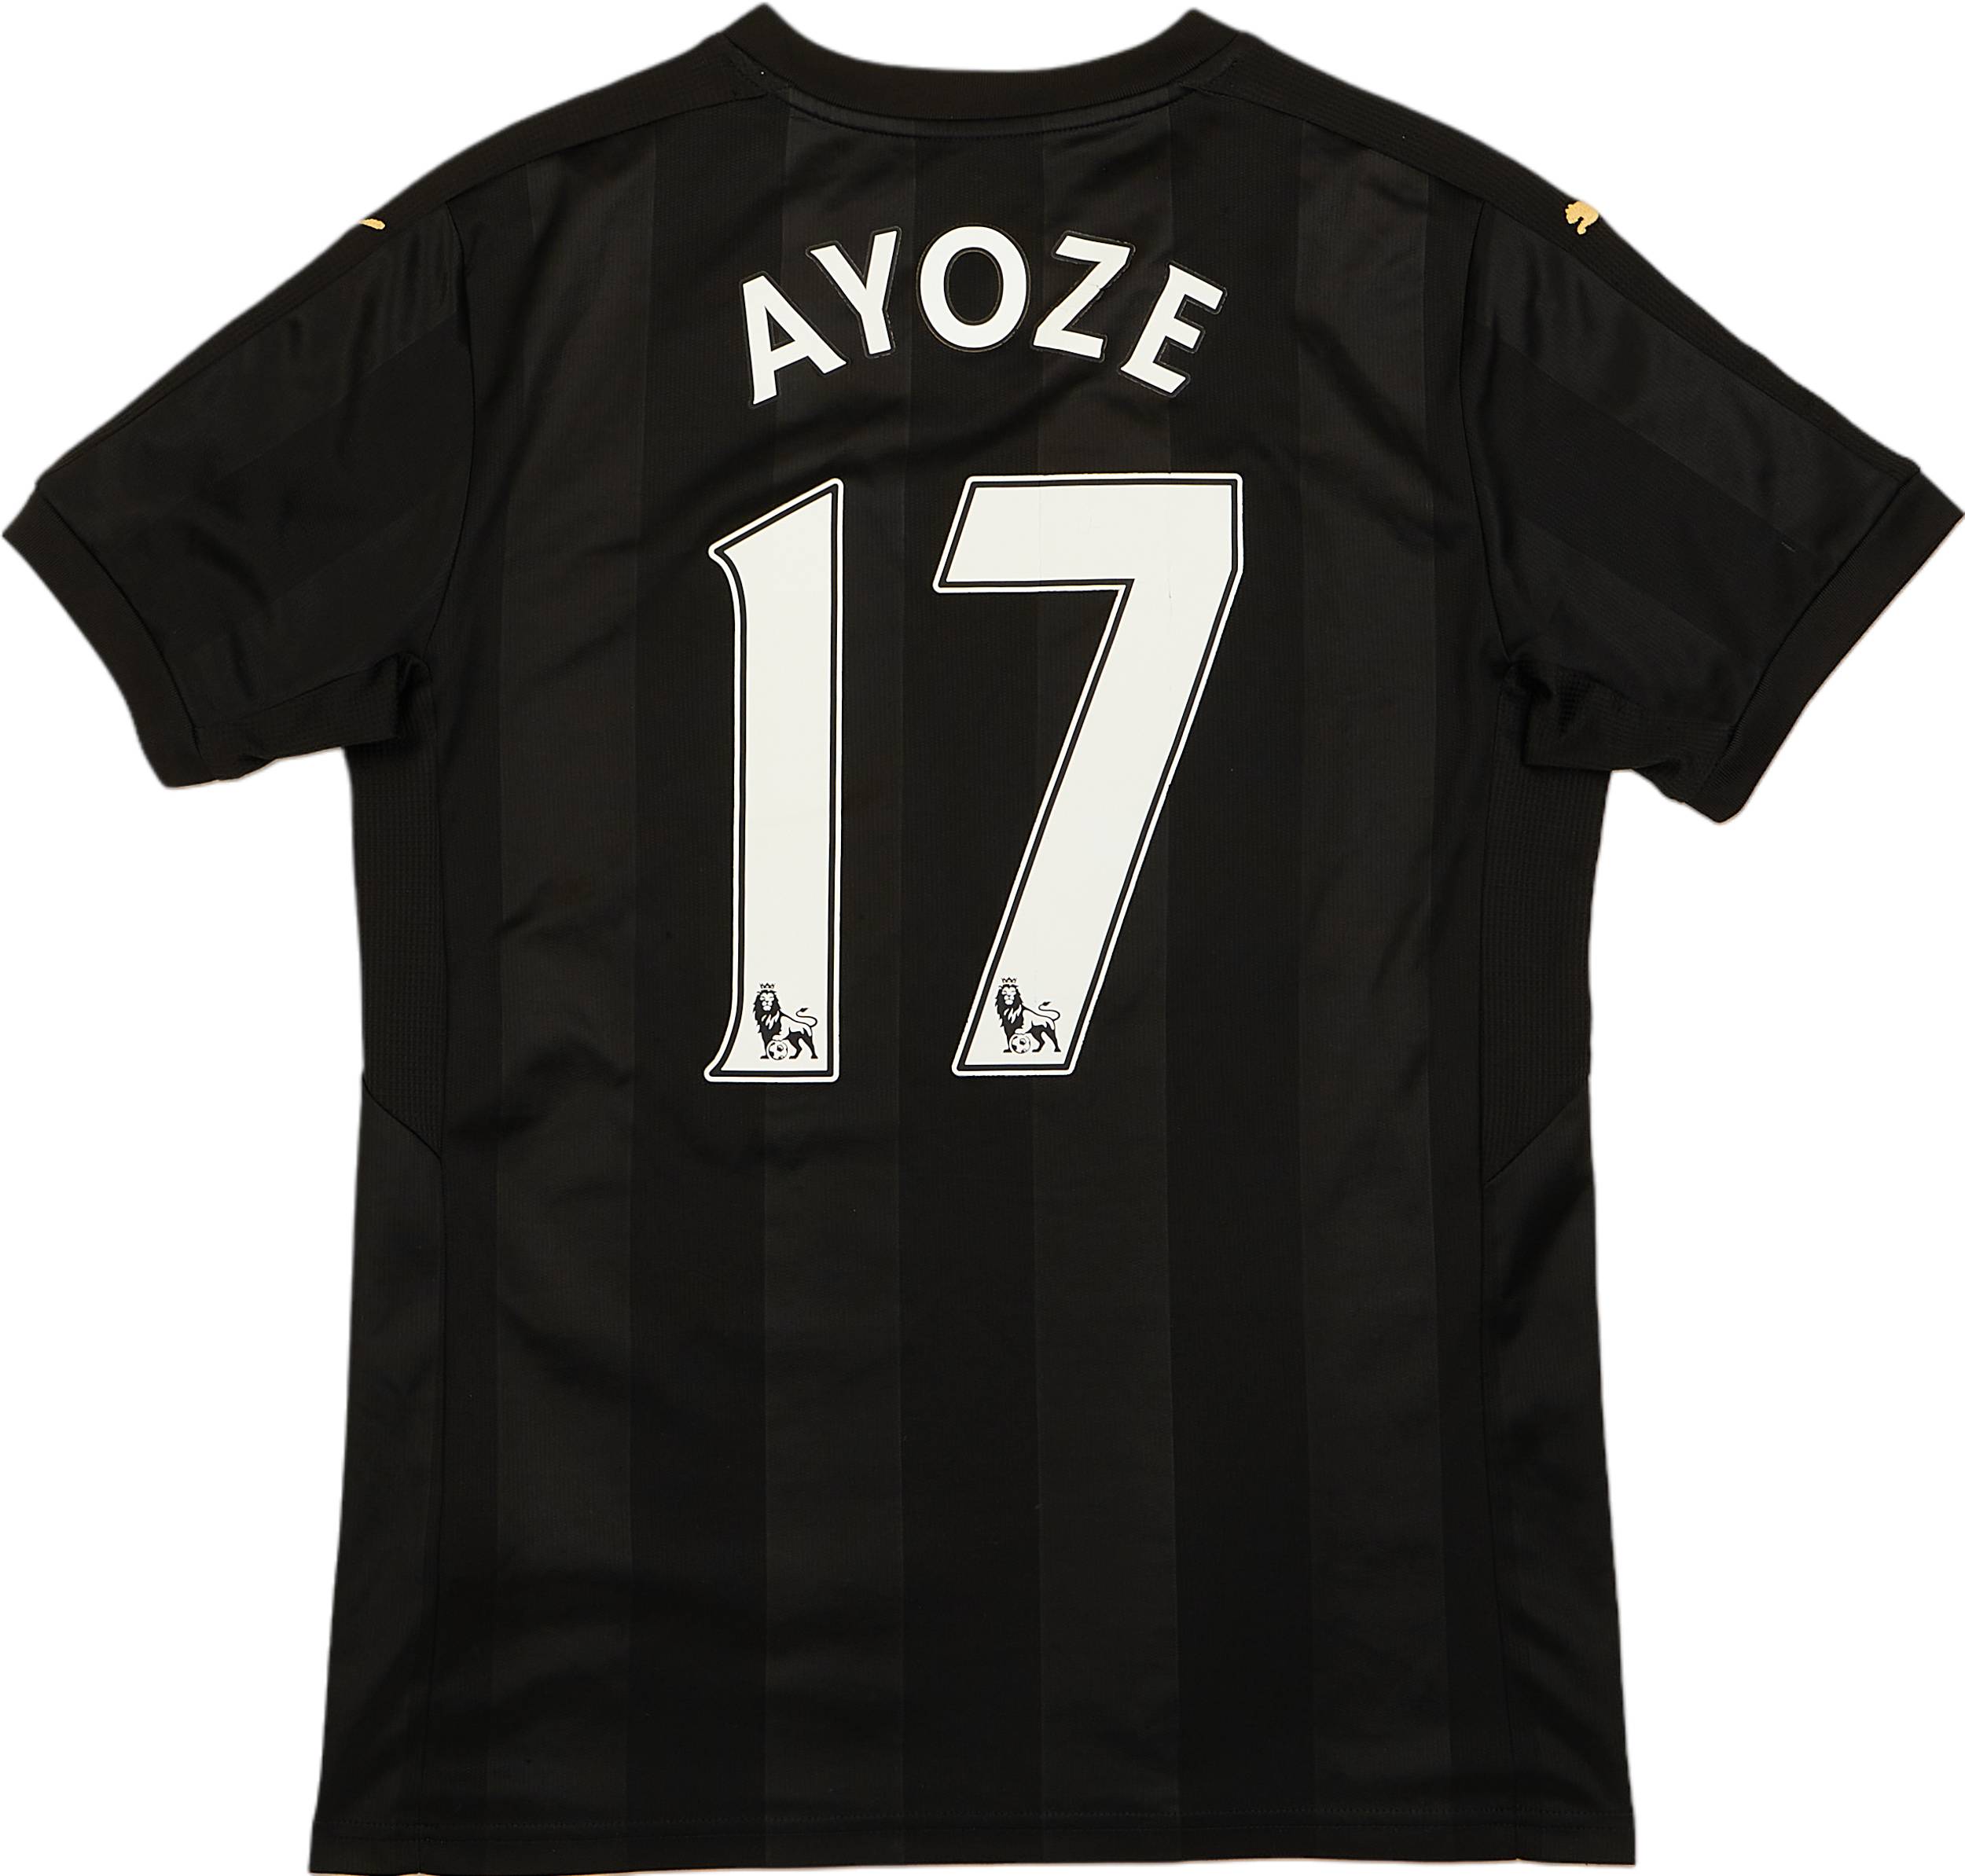 2017-18 Newcastle Third Shirt Ayoze #17 - 6/10 - (S)